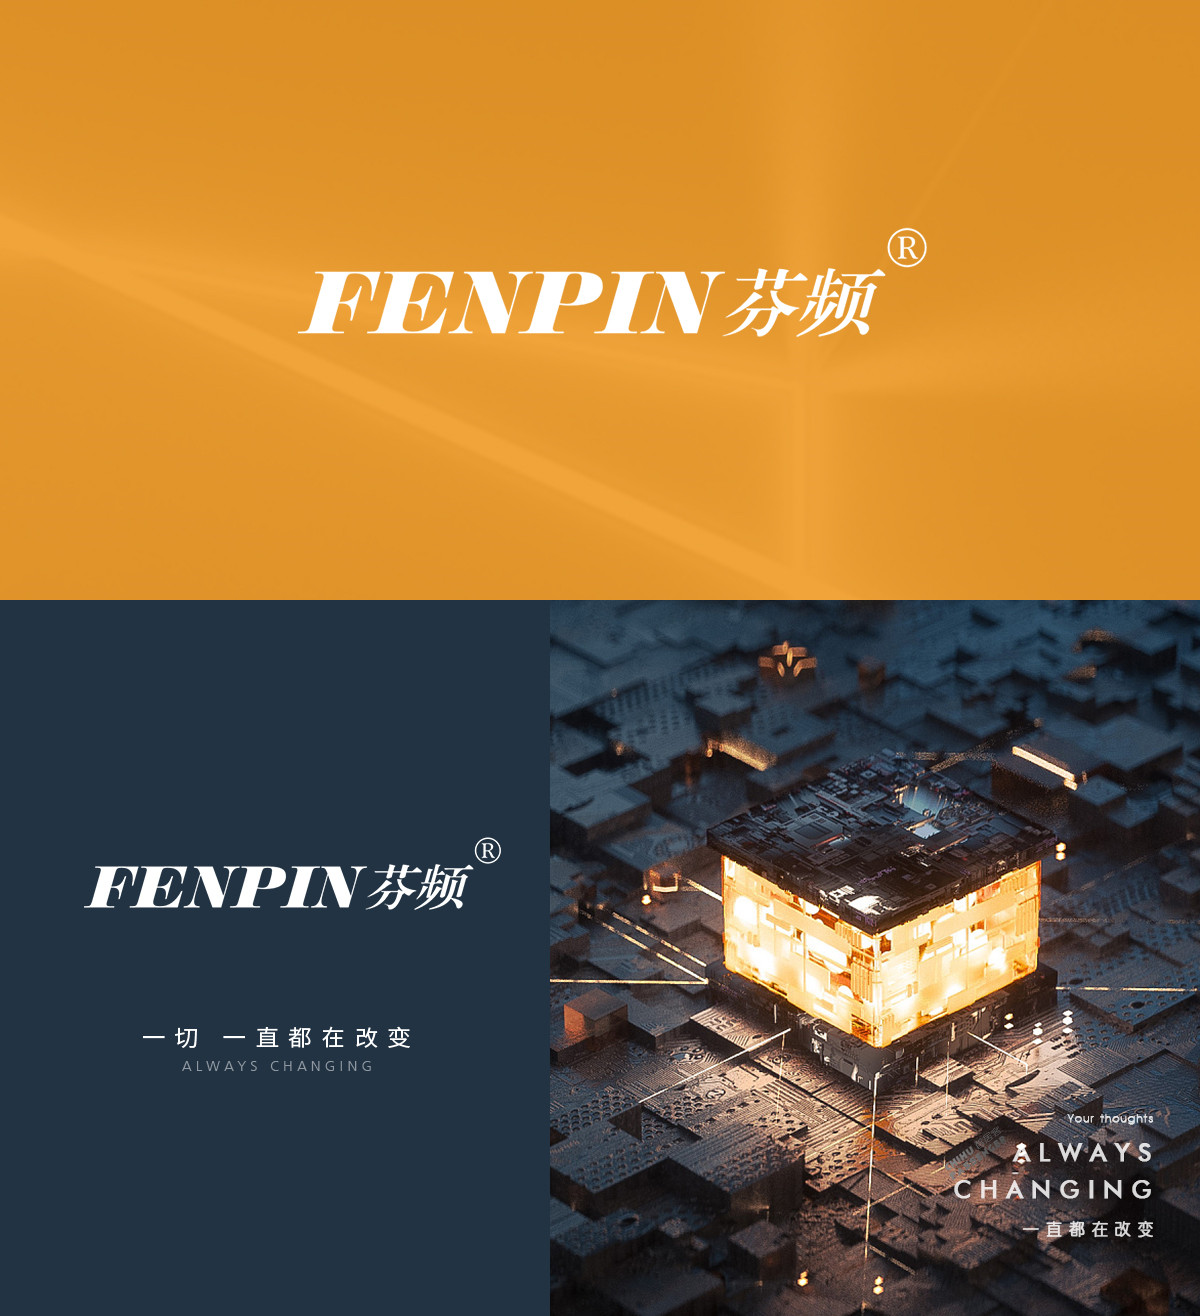 芬频 FENPIN